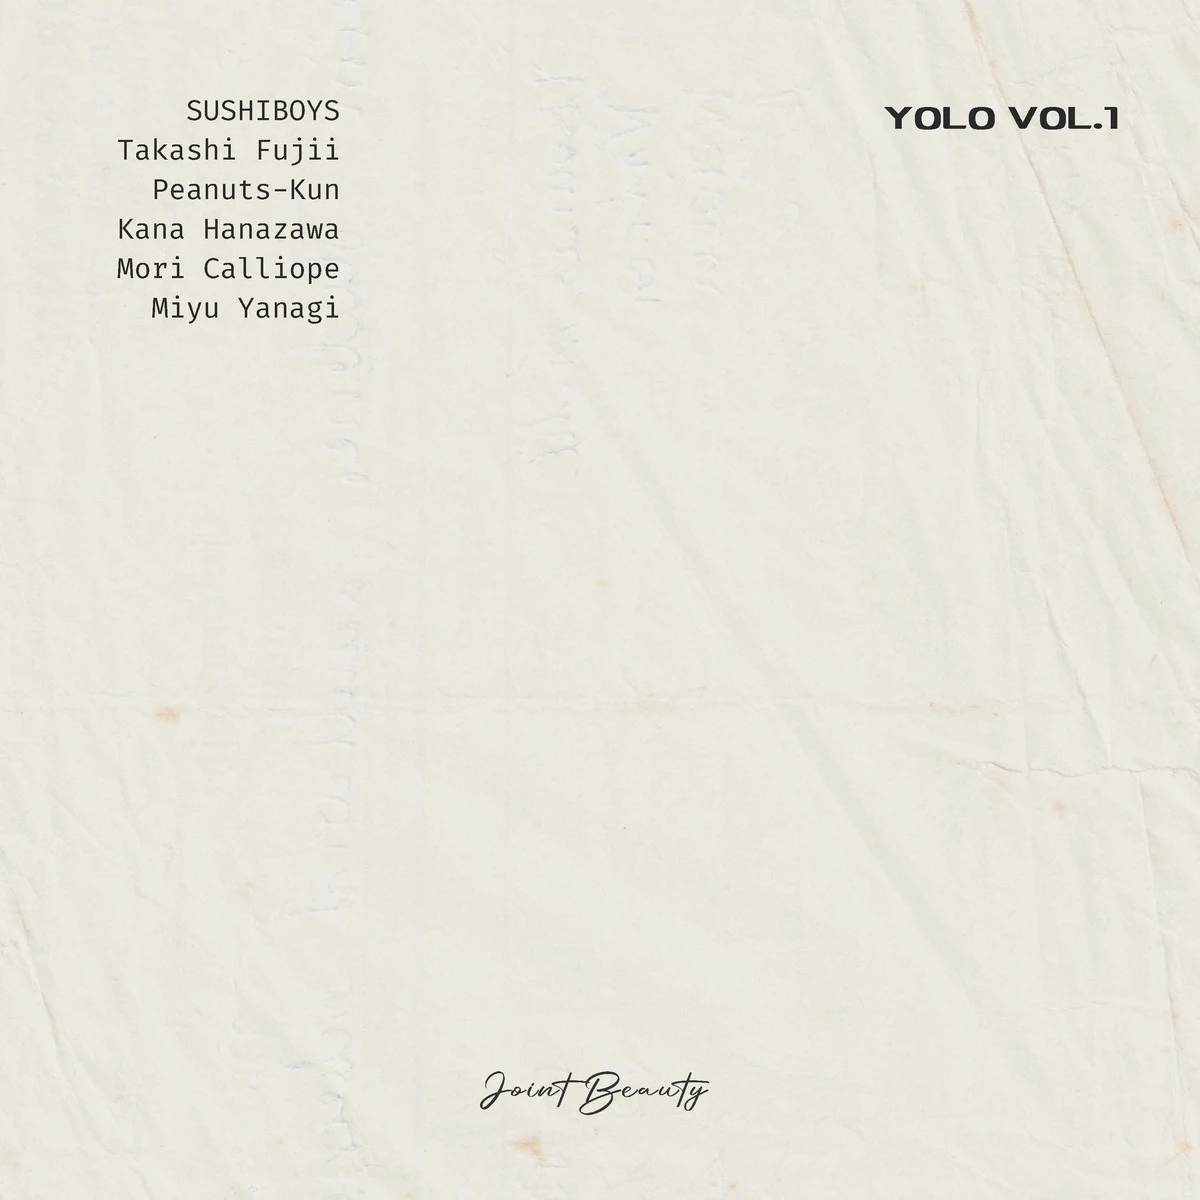 ビートメイカー・Joint BeautyさんのEP『YOLO Vol.1』のジャケット